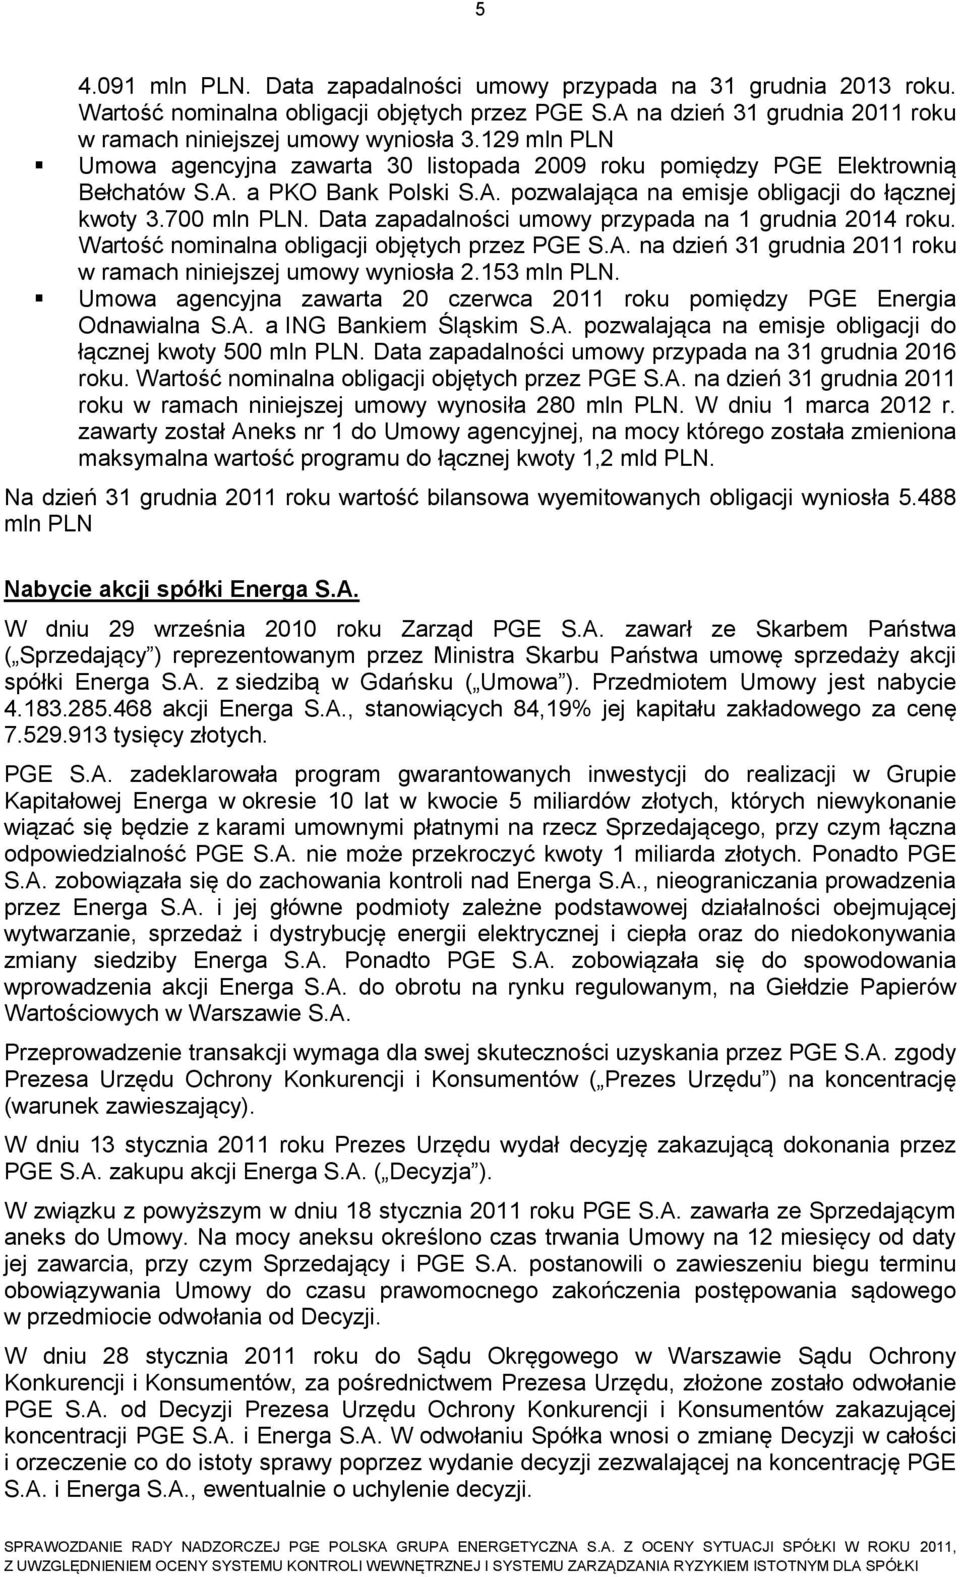 Data zapadalności umowy przypada na 1 grudnia 2014 roku. Wartość nominalna obligacji objętych przez PGE S.A. na dzień 31 grudnia 2011 roku w ramach niniejszej umowy wyniosła 2.153 mln PLN.